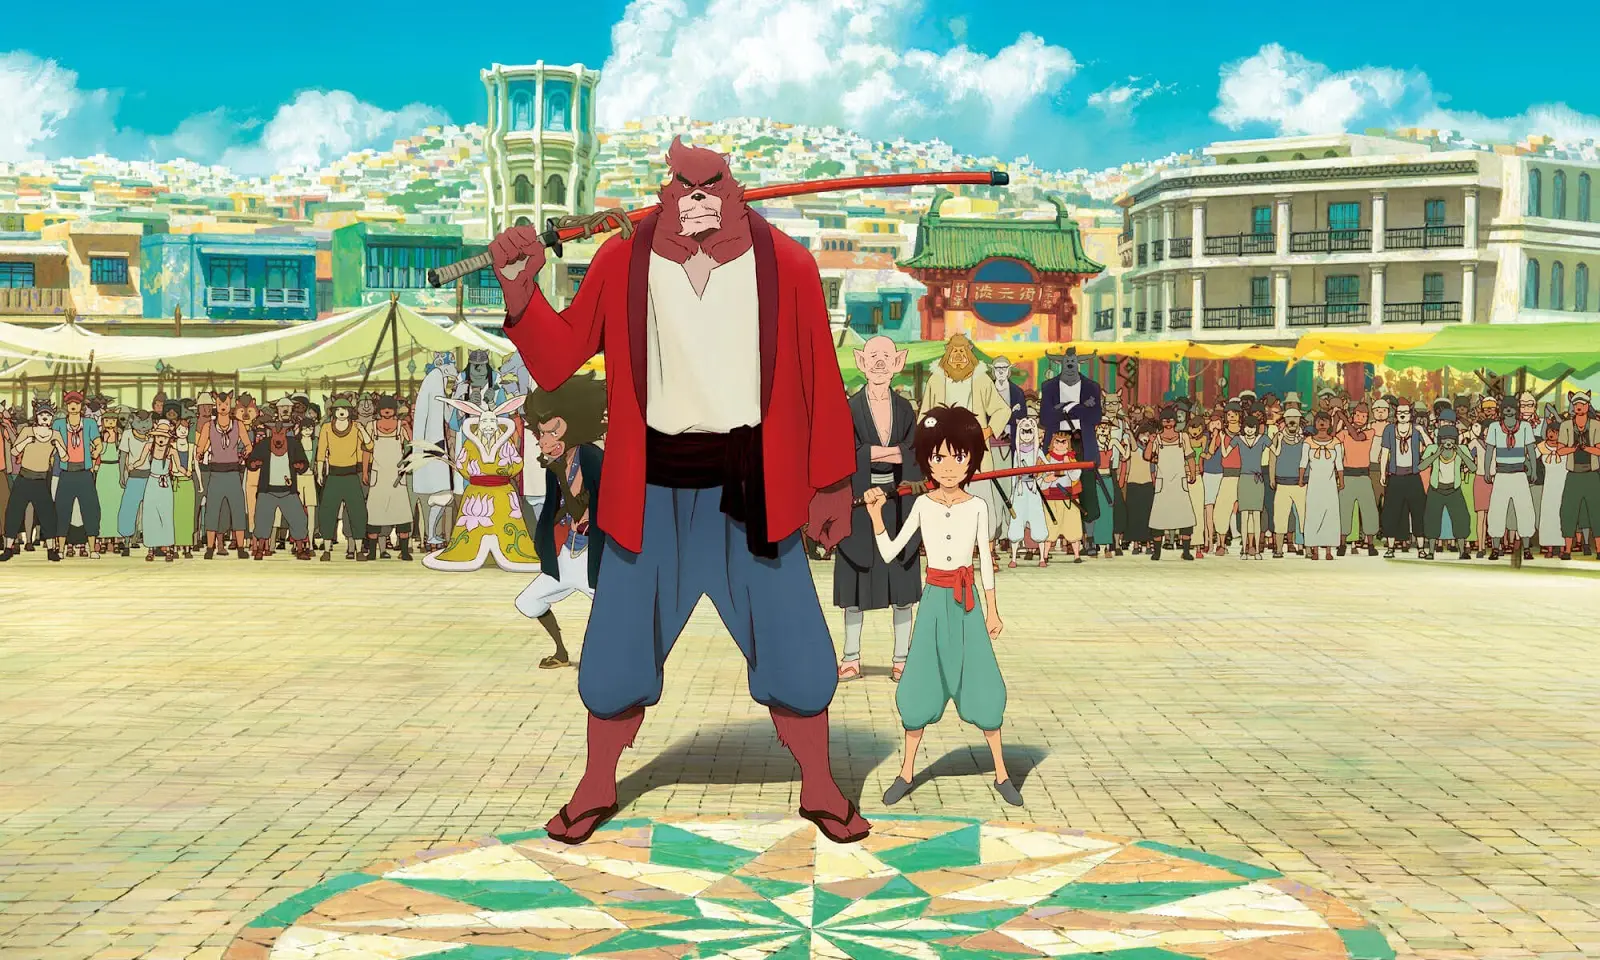 Recenze: Kluk ve světě příšer připomíná slabší filmy Hayao Miyazakiho